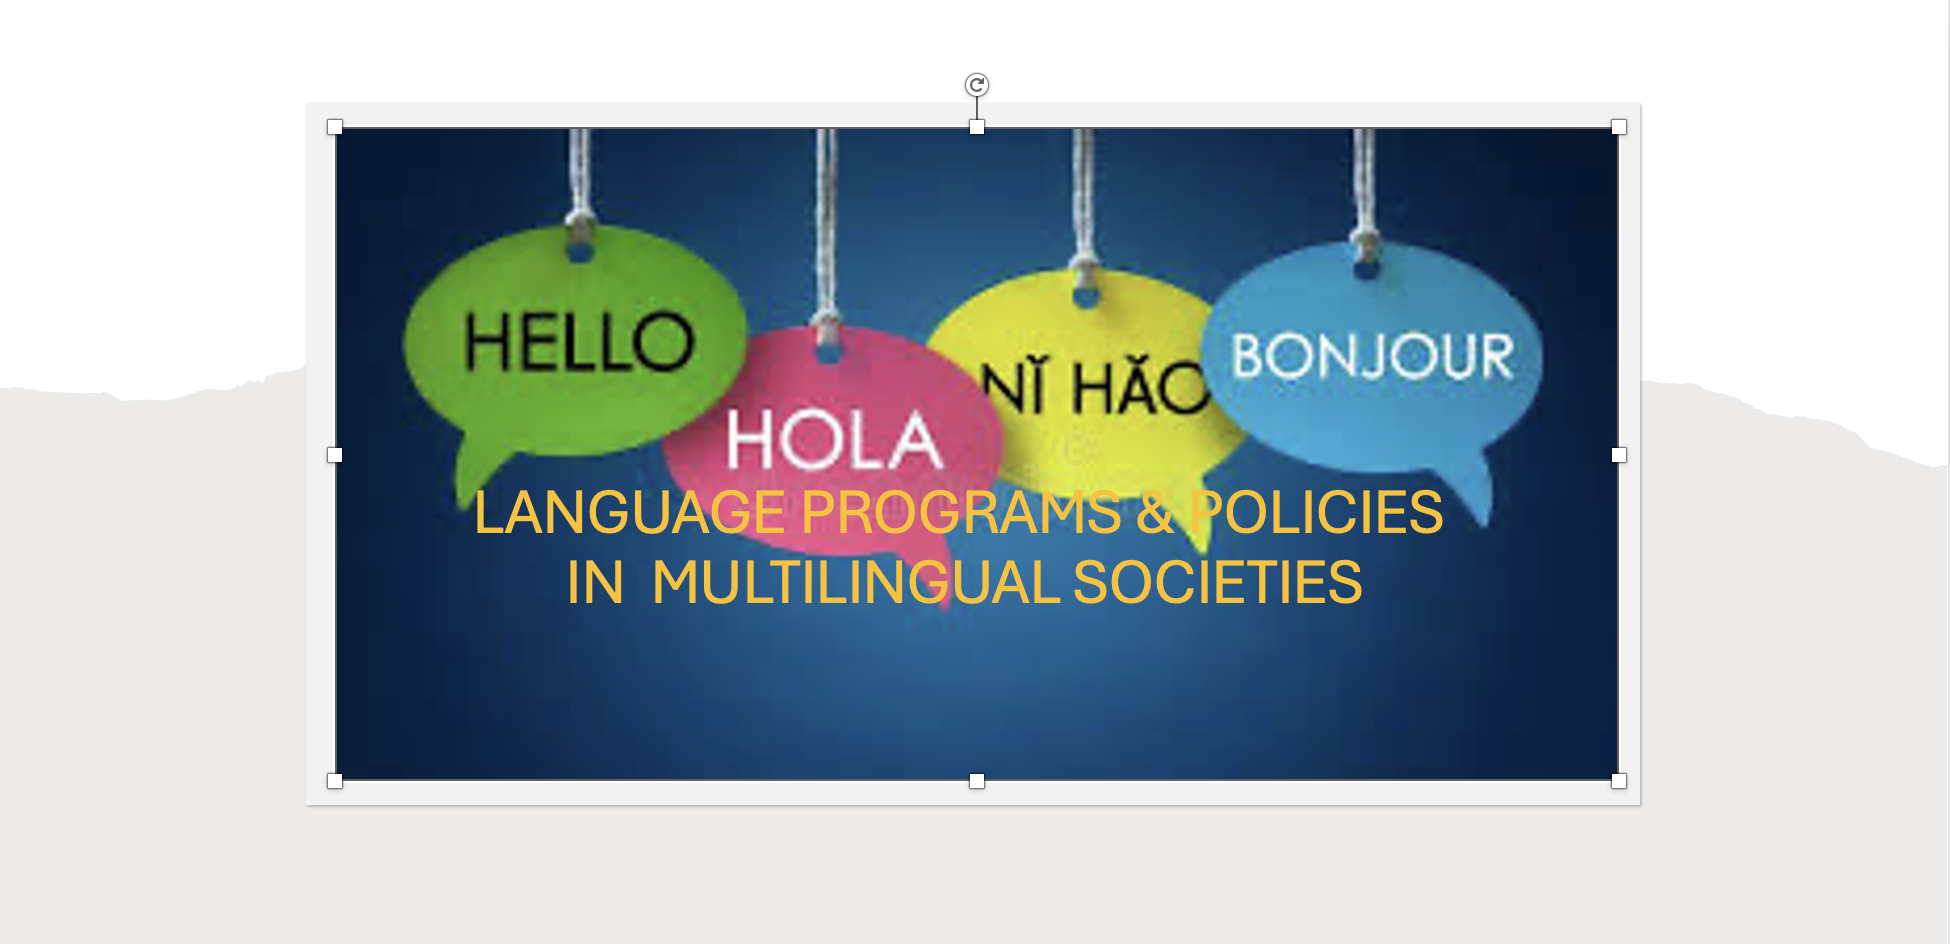 LANGUAGE PROGRAMS & POLICIES IN MULTILINGUAL SOCIETIES